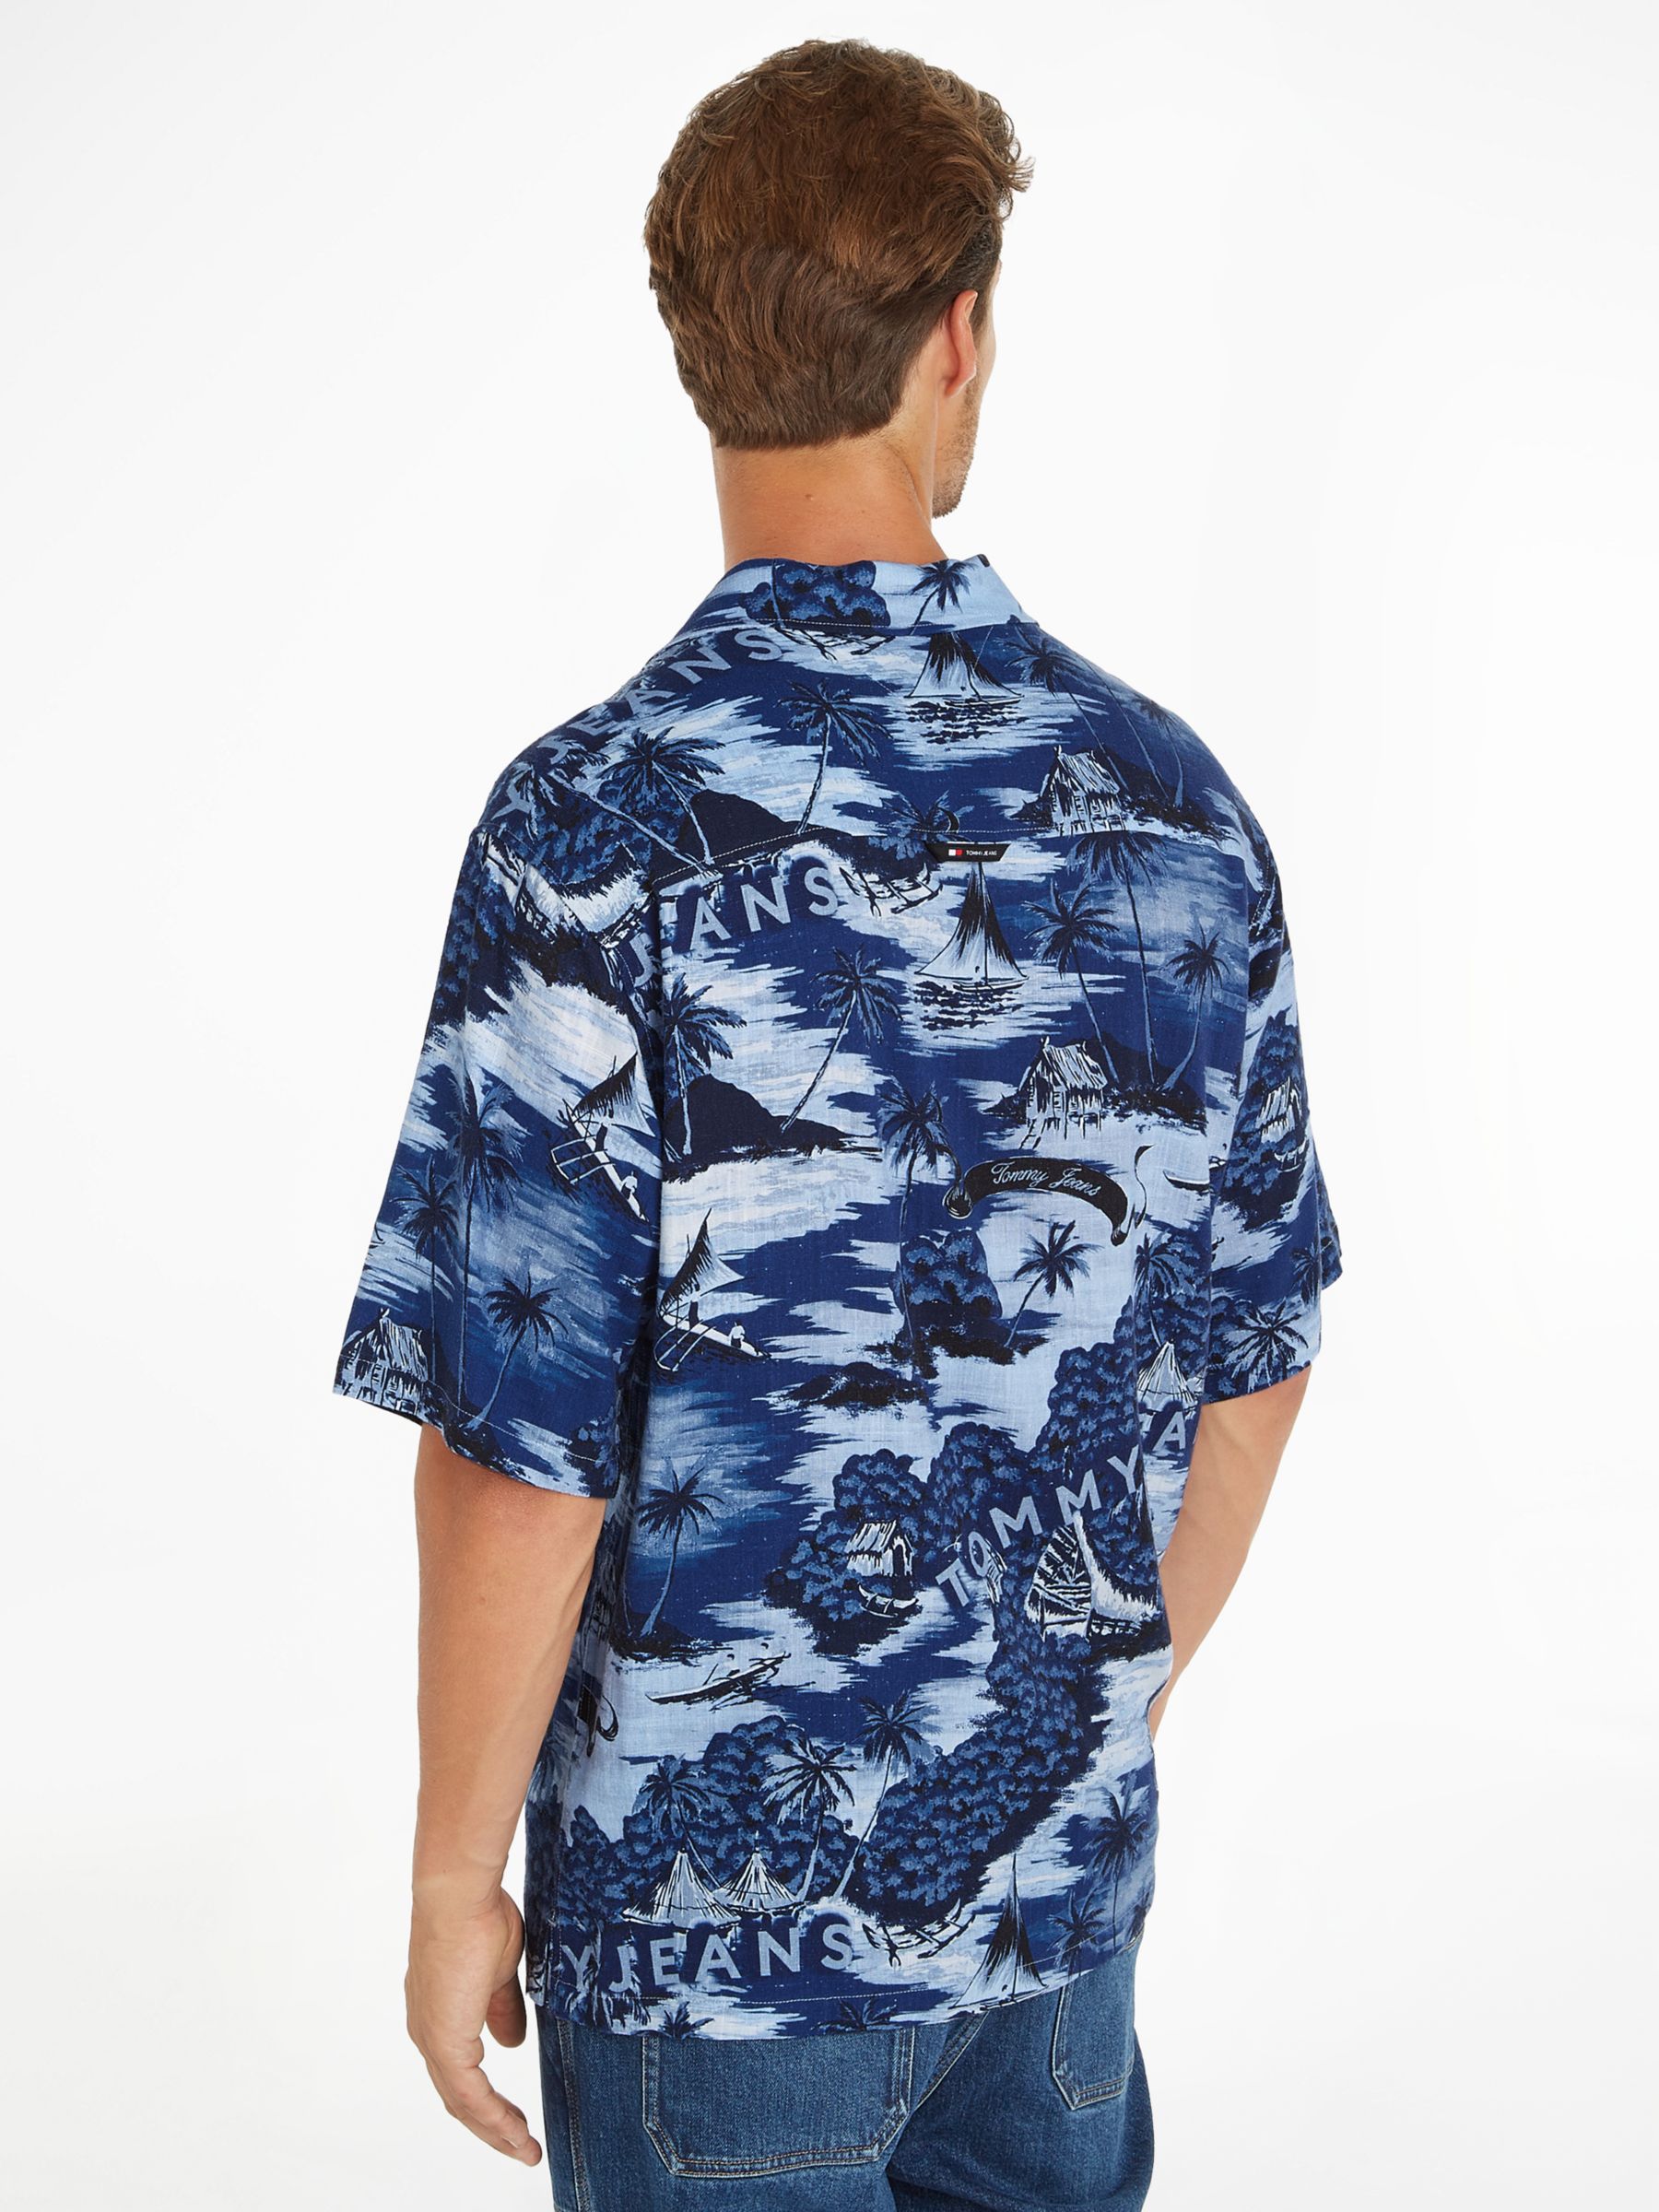 Tommy Jeans Hawaiian Print Camp Shirt, Blue/Multi, L